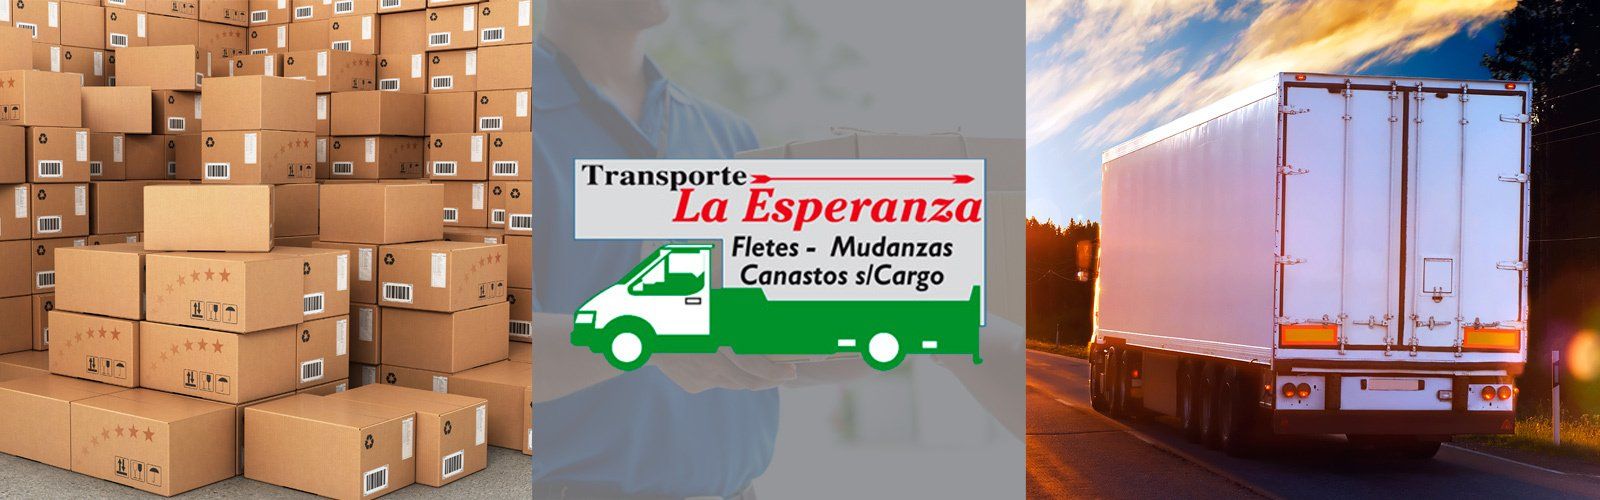 La Esperanza Transporte, servicios de transporte.